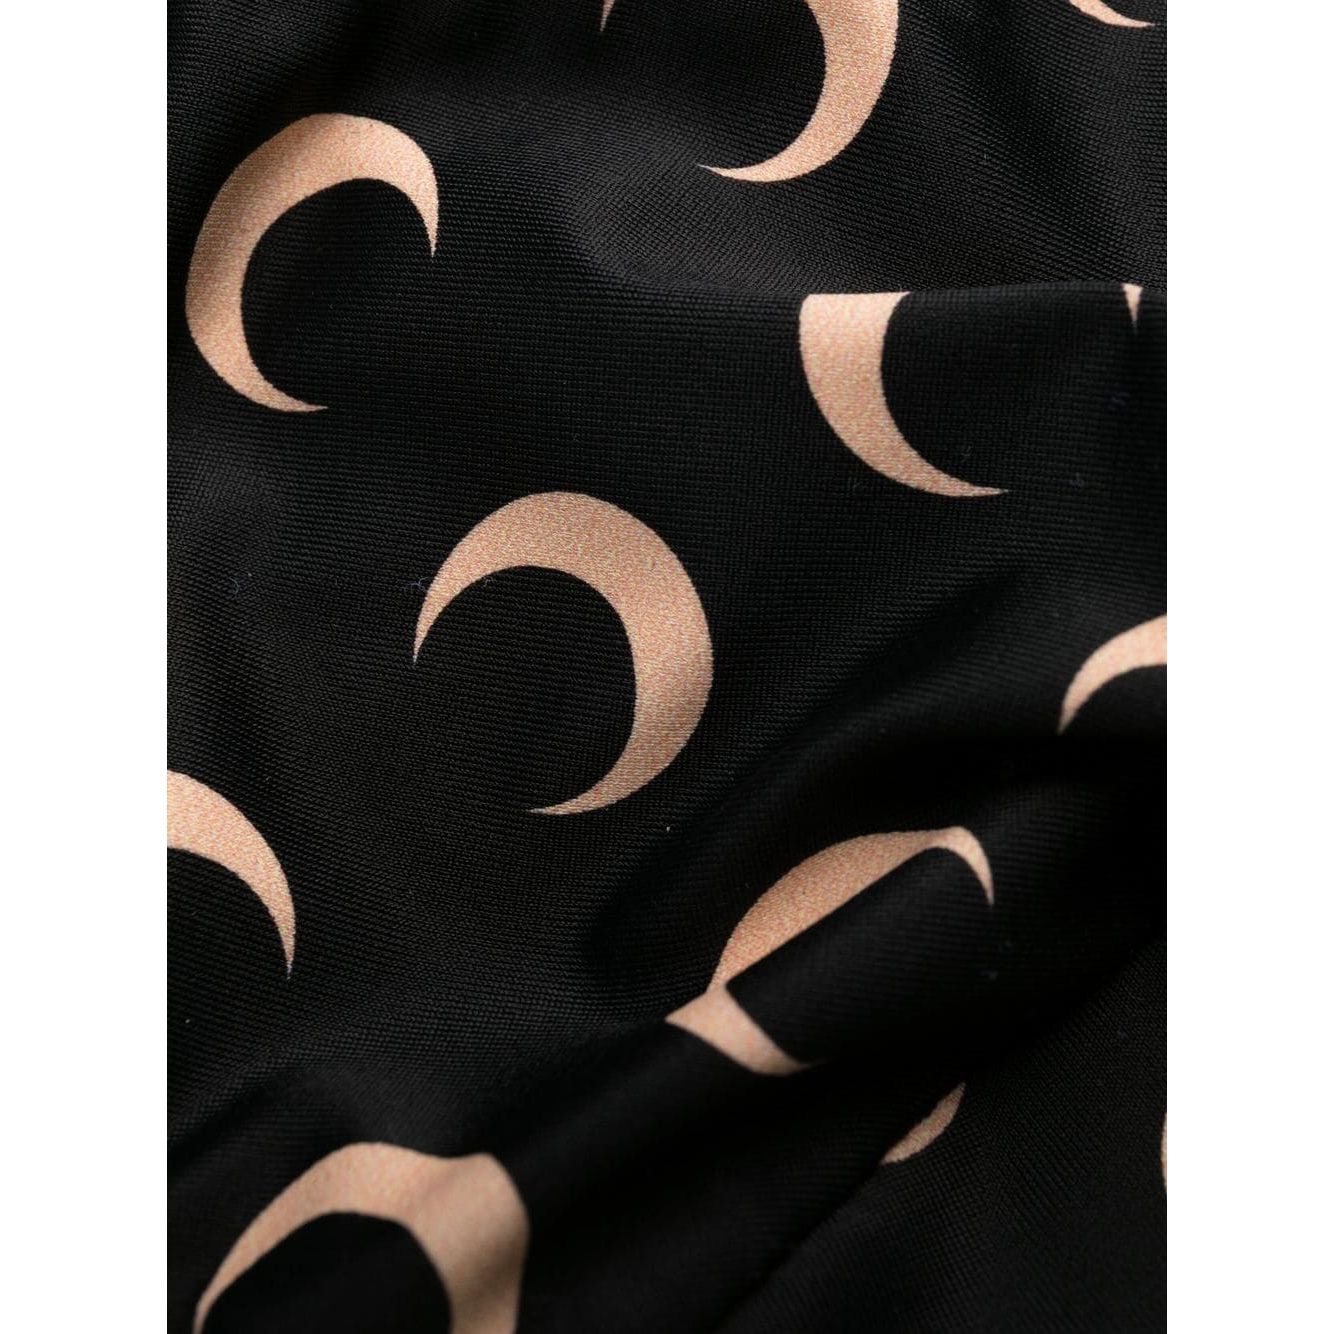 MARINE SERRE Black bikini with crescent moon print